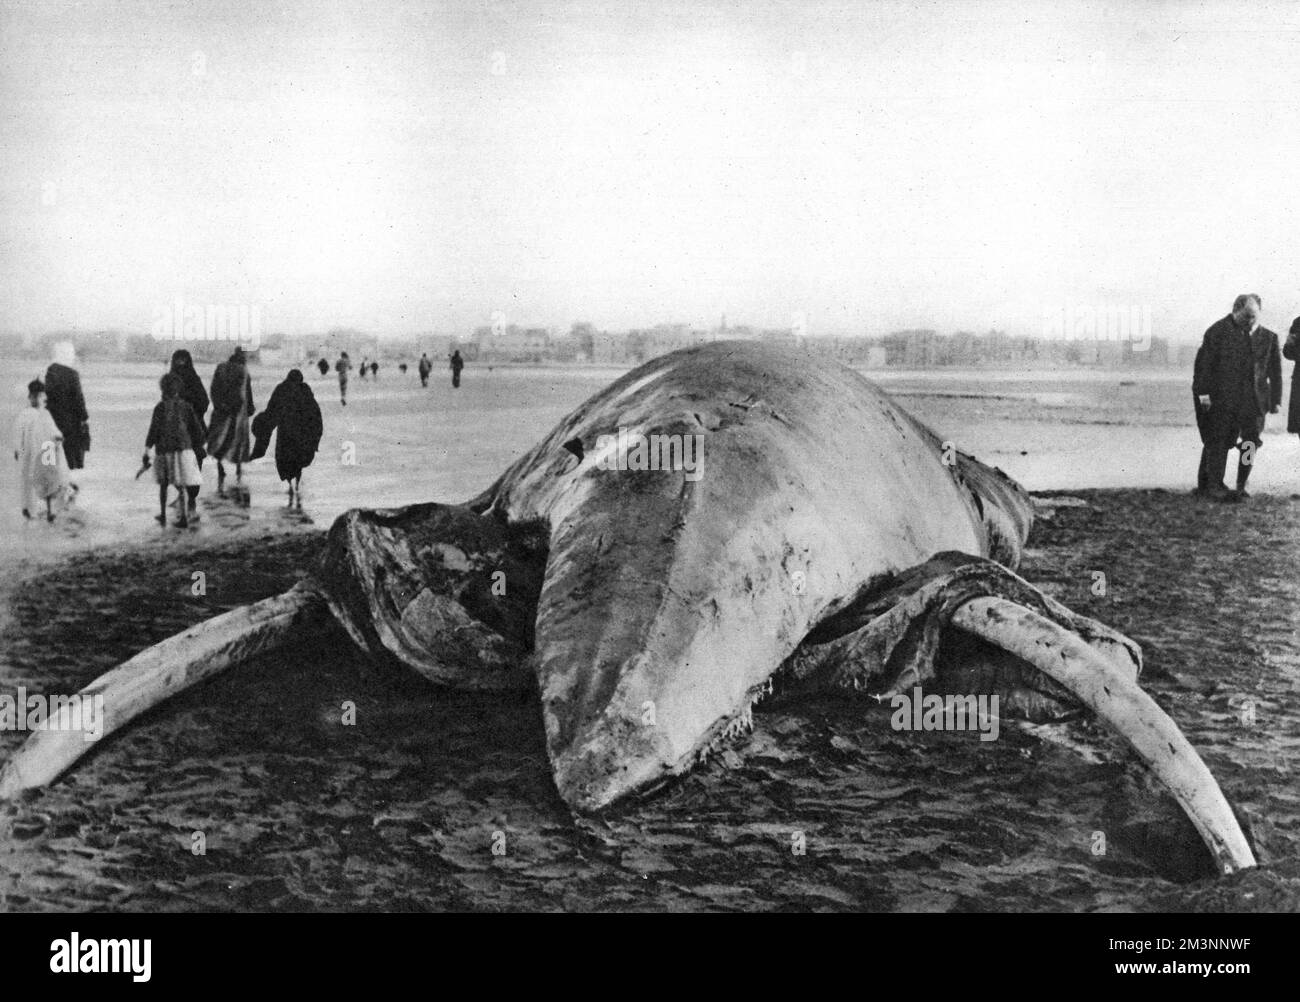 Le corps en décomposition d'une baleine Sei, lavée à terre sur la plage de Suez le 3 janvier 1950 à la suite d'une tempête. Au départ, on a spéculé qu'il s'agissait d'une mystérieuse créature marine, avec de grandes défenses en saillie. Un examen plus attentif a révélé que les 'défenses' étaient les mâchoires inférieures, révélées par décomposition. Date : janvier 1950 Banque D'Images